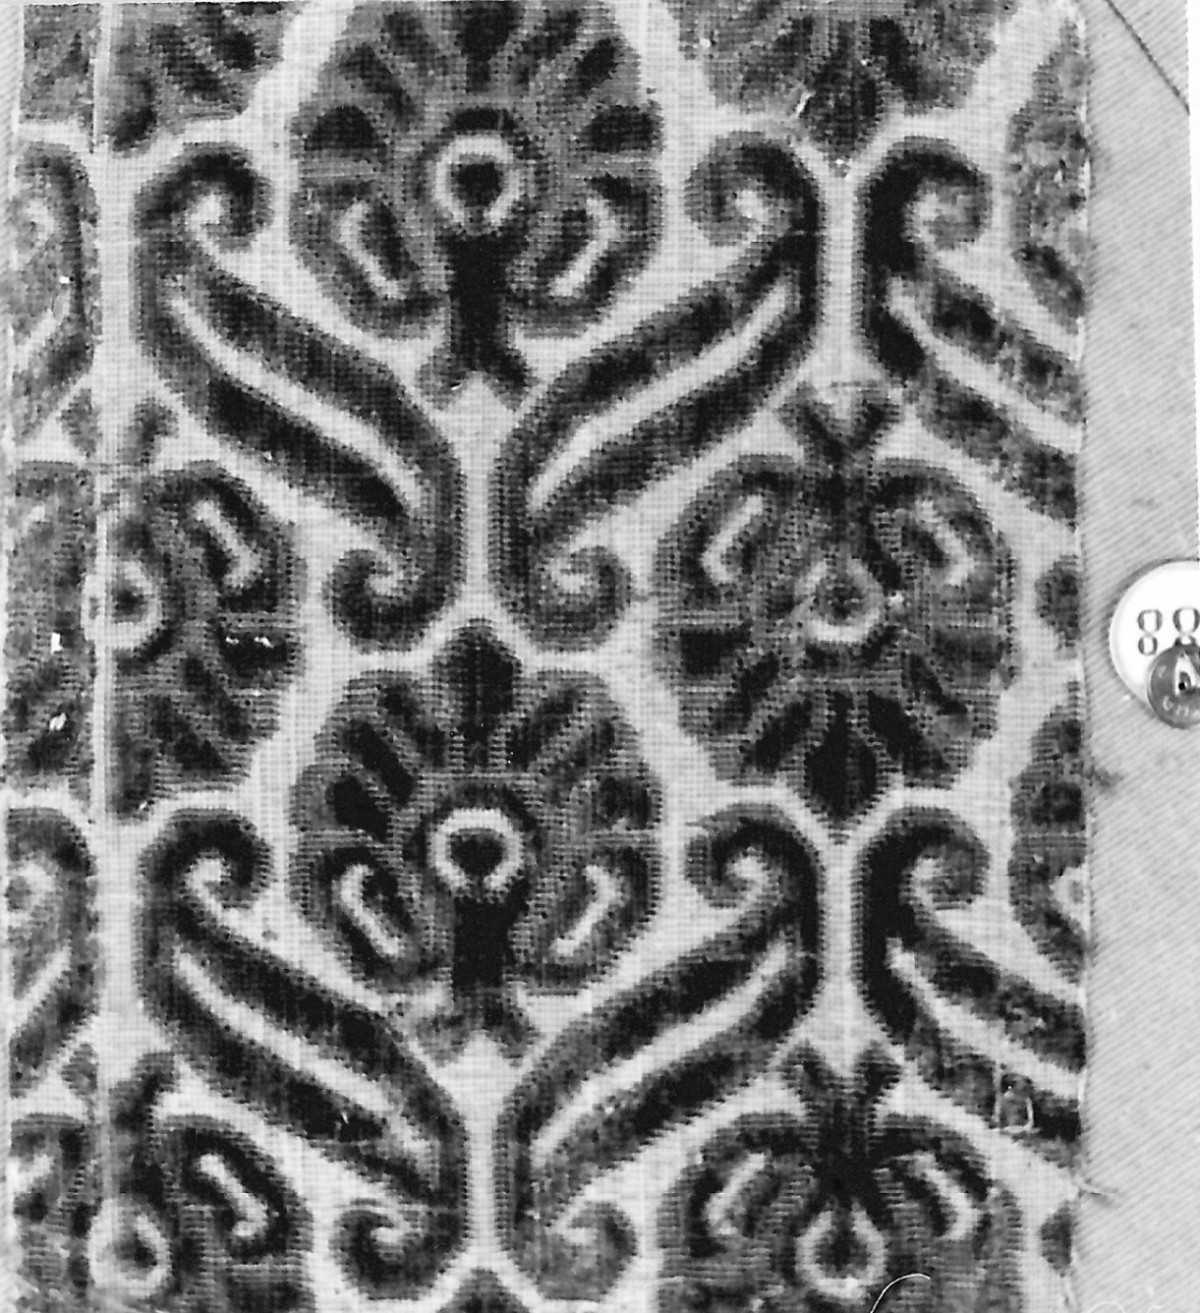 motivi decorativi vegetali stilizzati (tessuto, frammento) - manifattura italiana (sec. XVII)